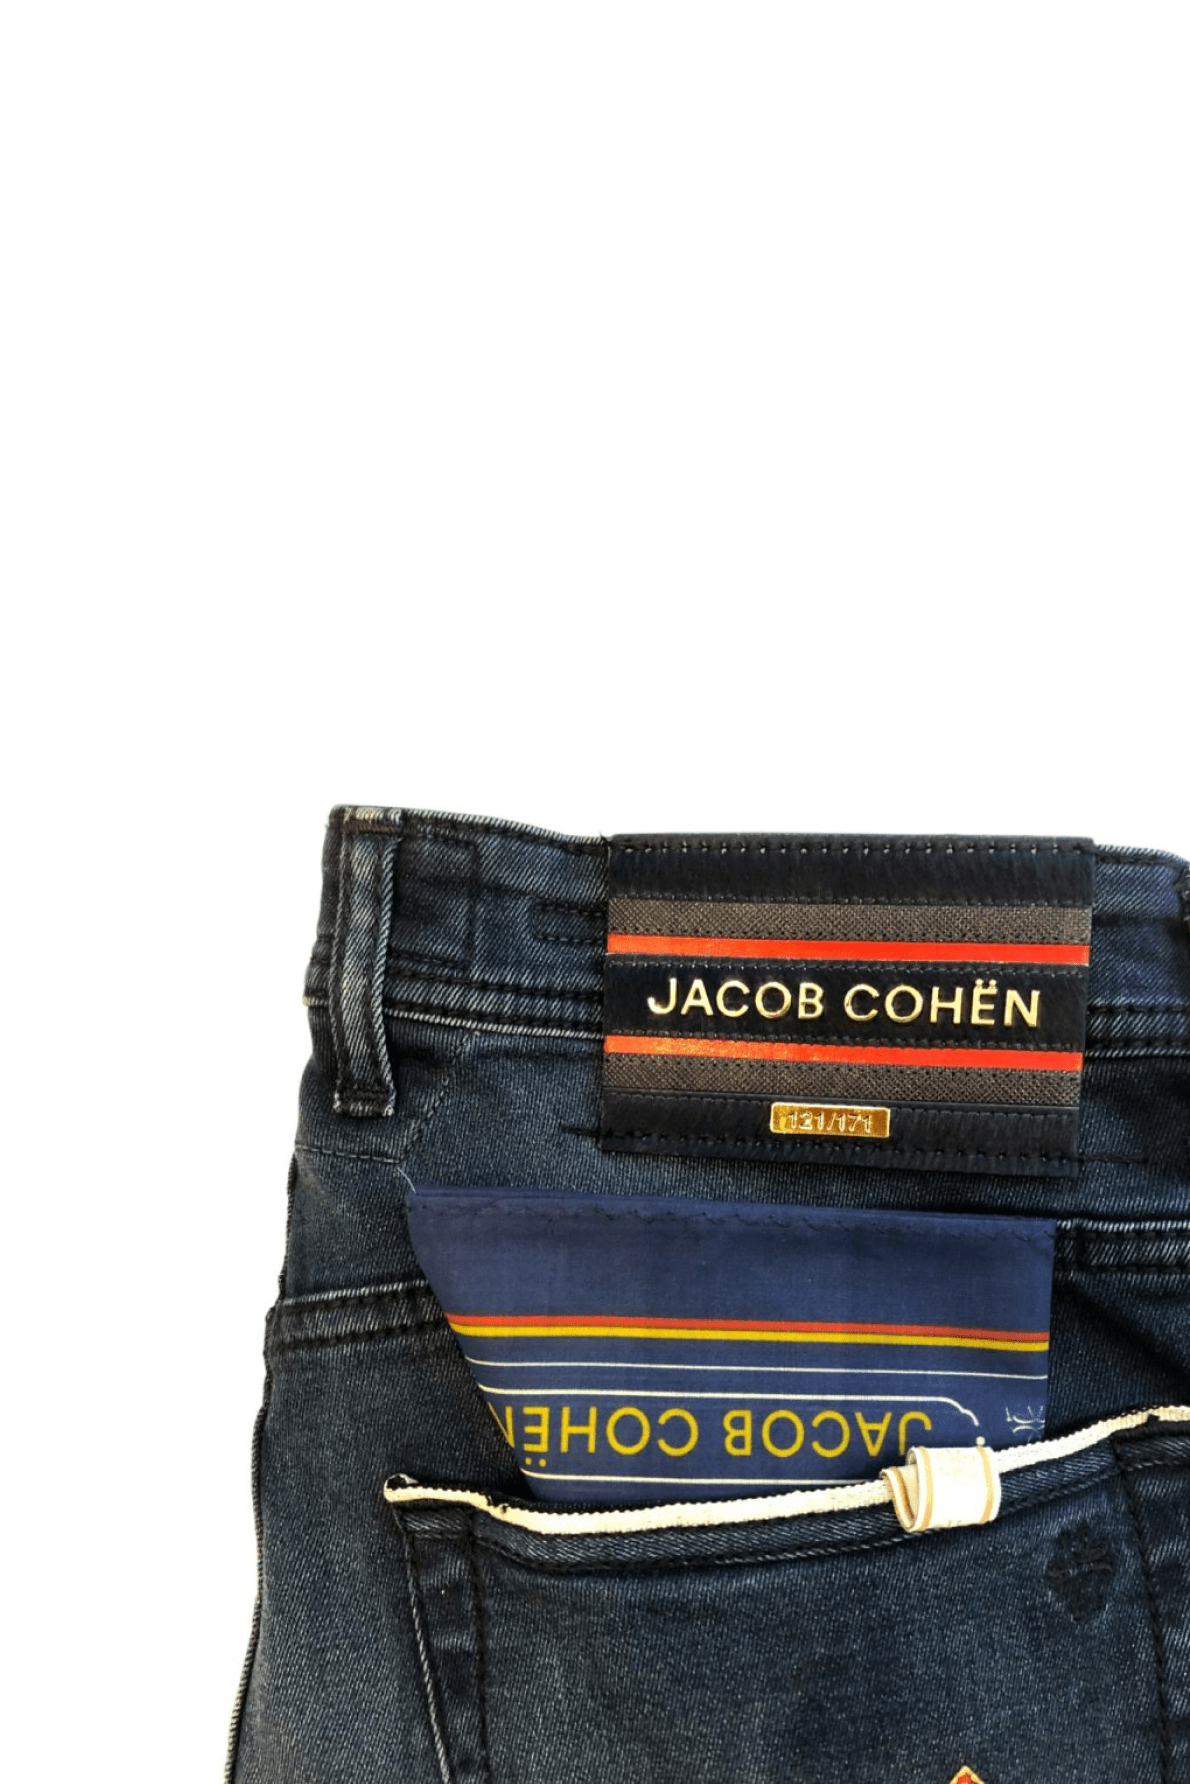 Jacob Cohën Men's Slim Fit Jeans Blue - Close Up Logo Patch